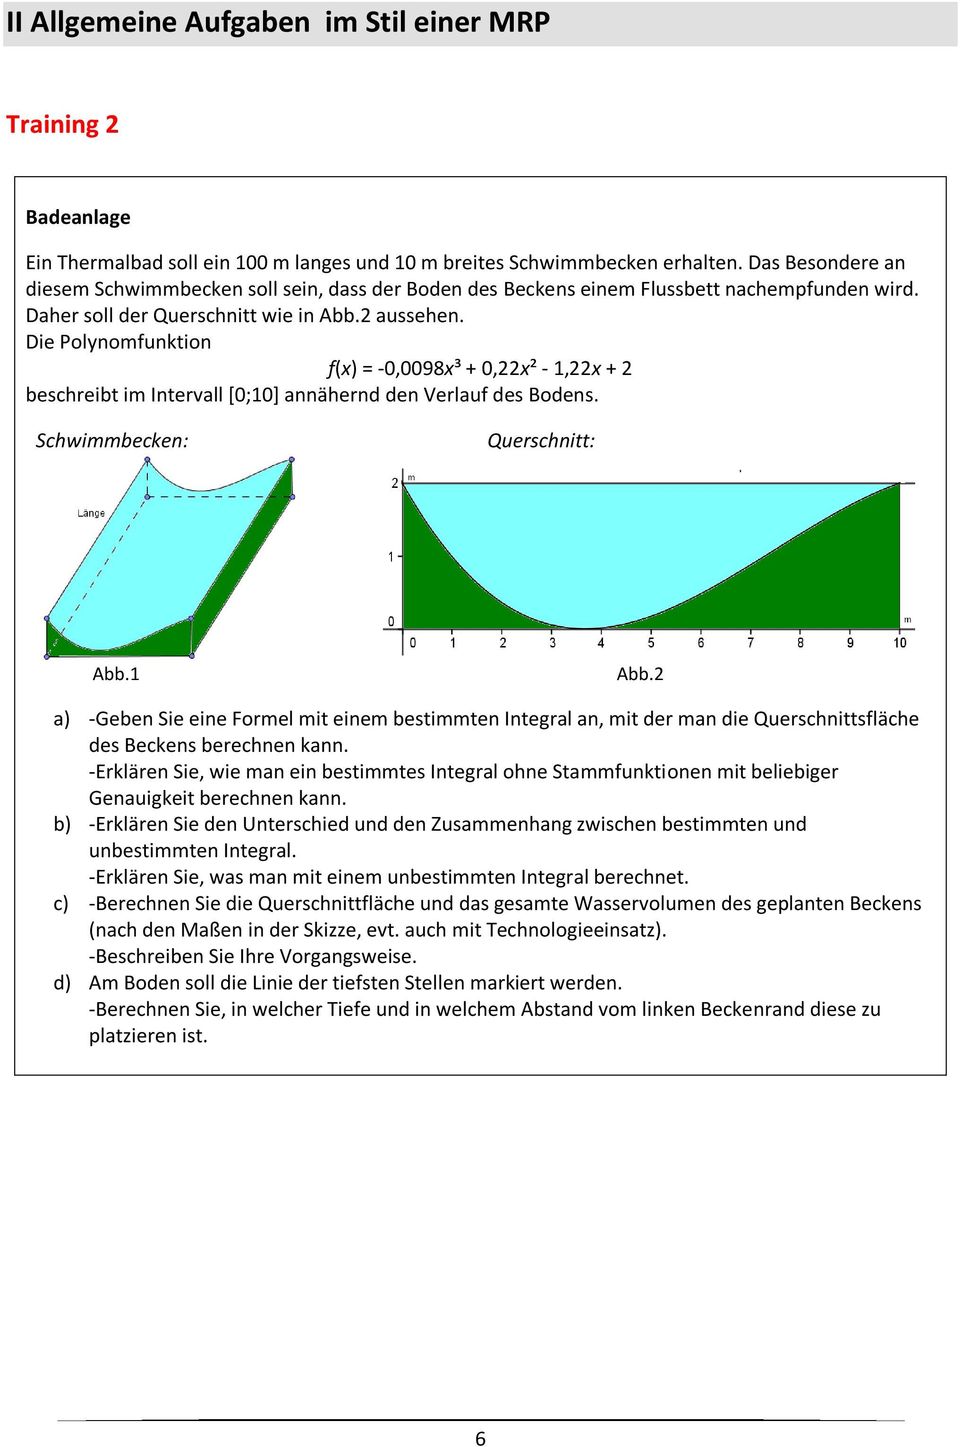 Die Polynomfunktion f(x) = -0,0098x³ + 0,22x² - 1,22x + 2 beschreibt im Intervall [0;10] annähernd den Verlauf des Bodens. Schwimmbecken: Querschnitt: Abb.1 Abb.